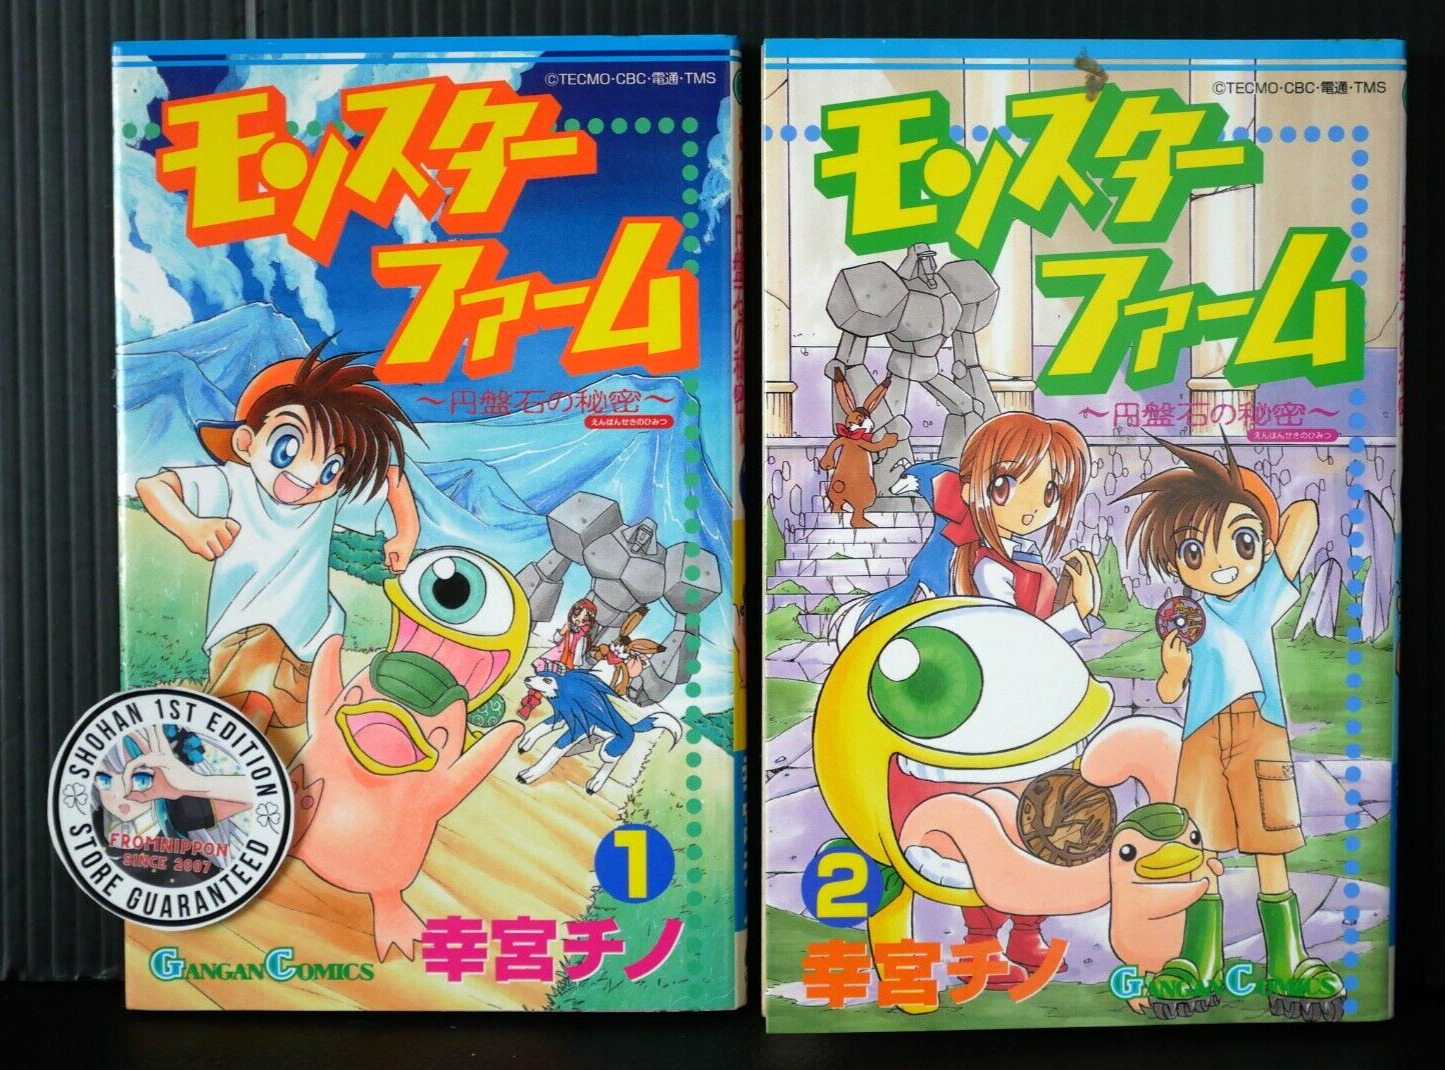 SHOHAN OOP: Monster Farm: Enbanseki no Himitsu Vol.1+2 Manga Complete Set